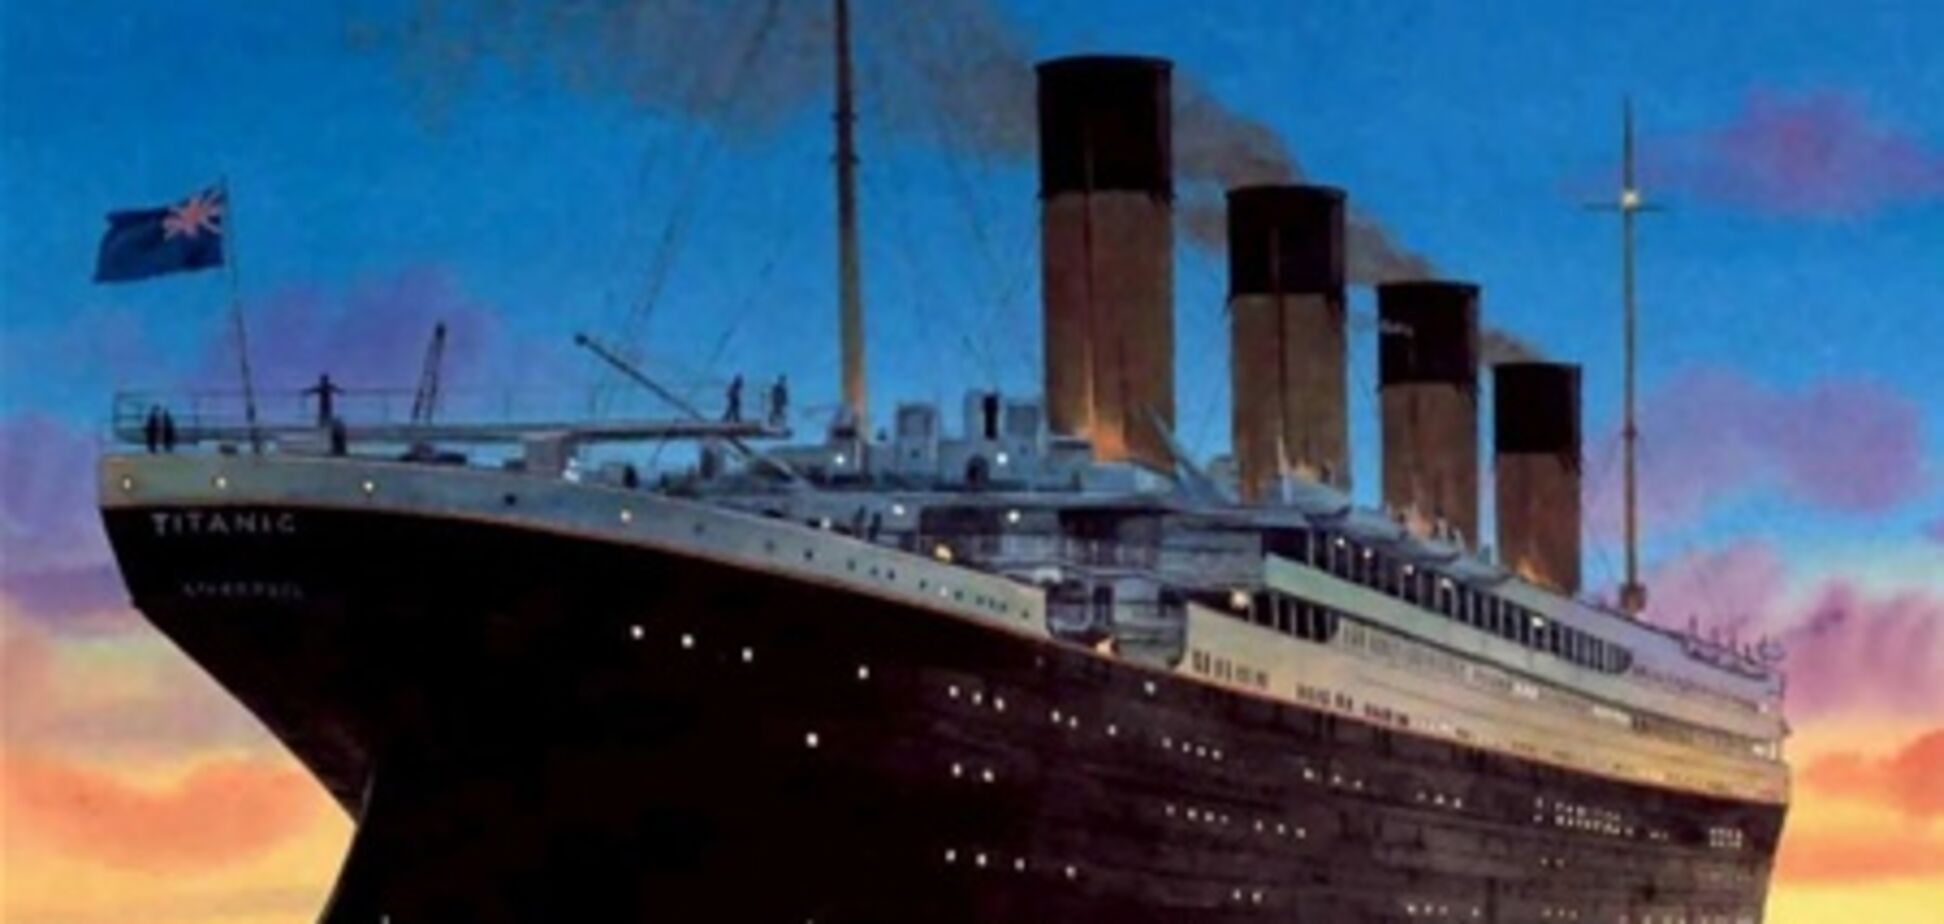 В Испании открылась экспозиция «Титаник»